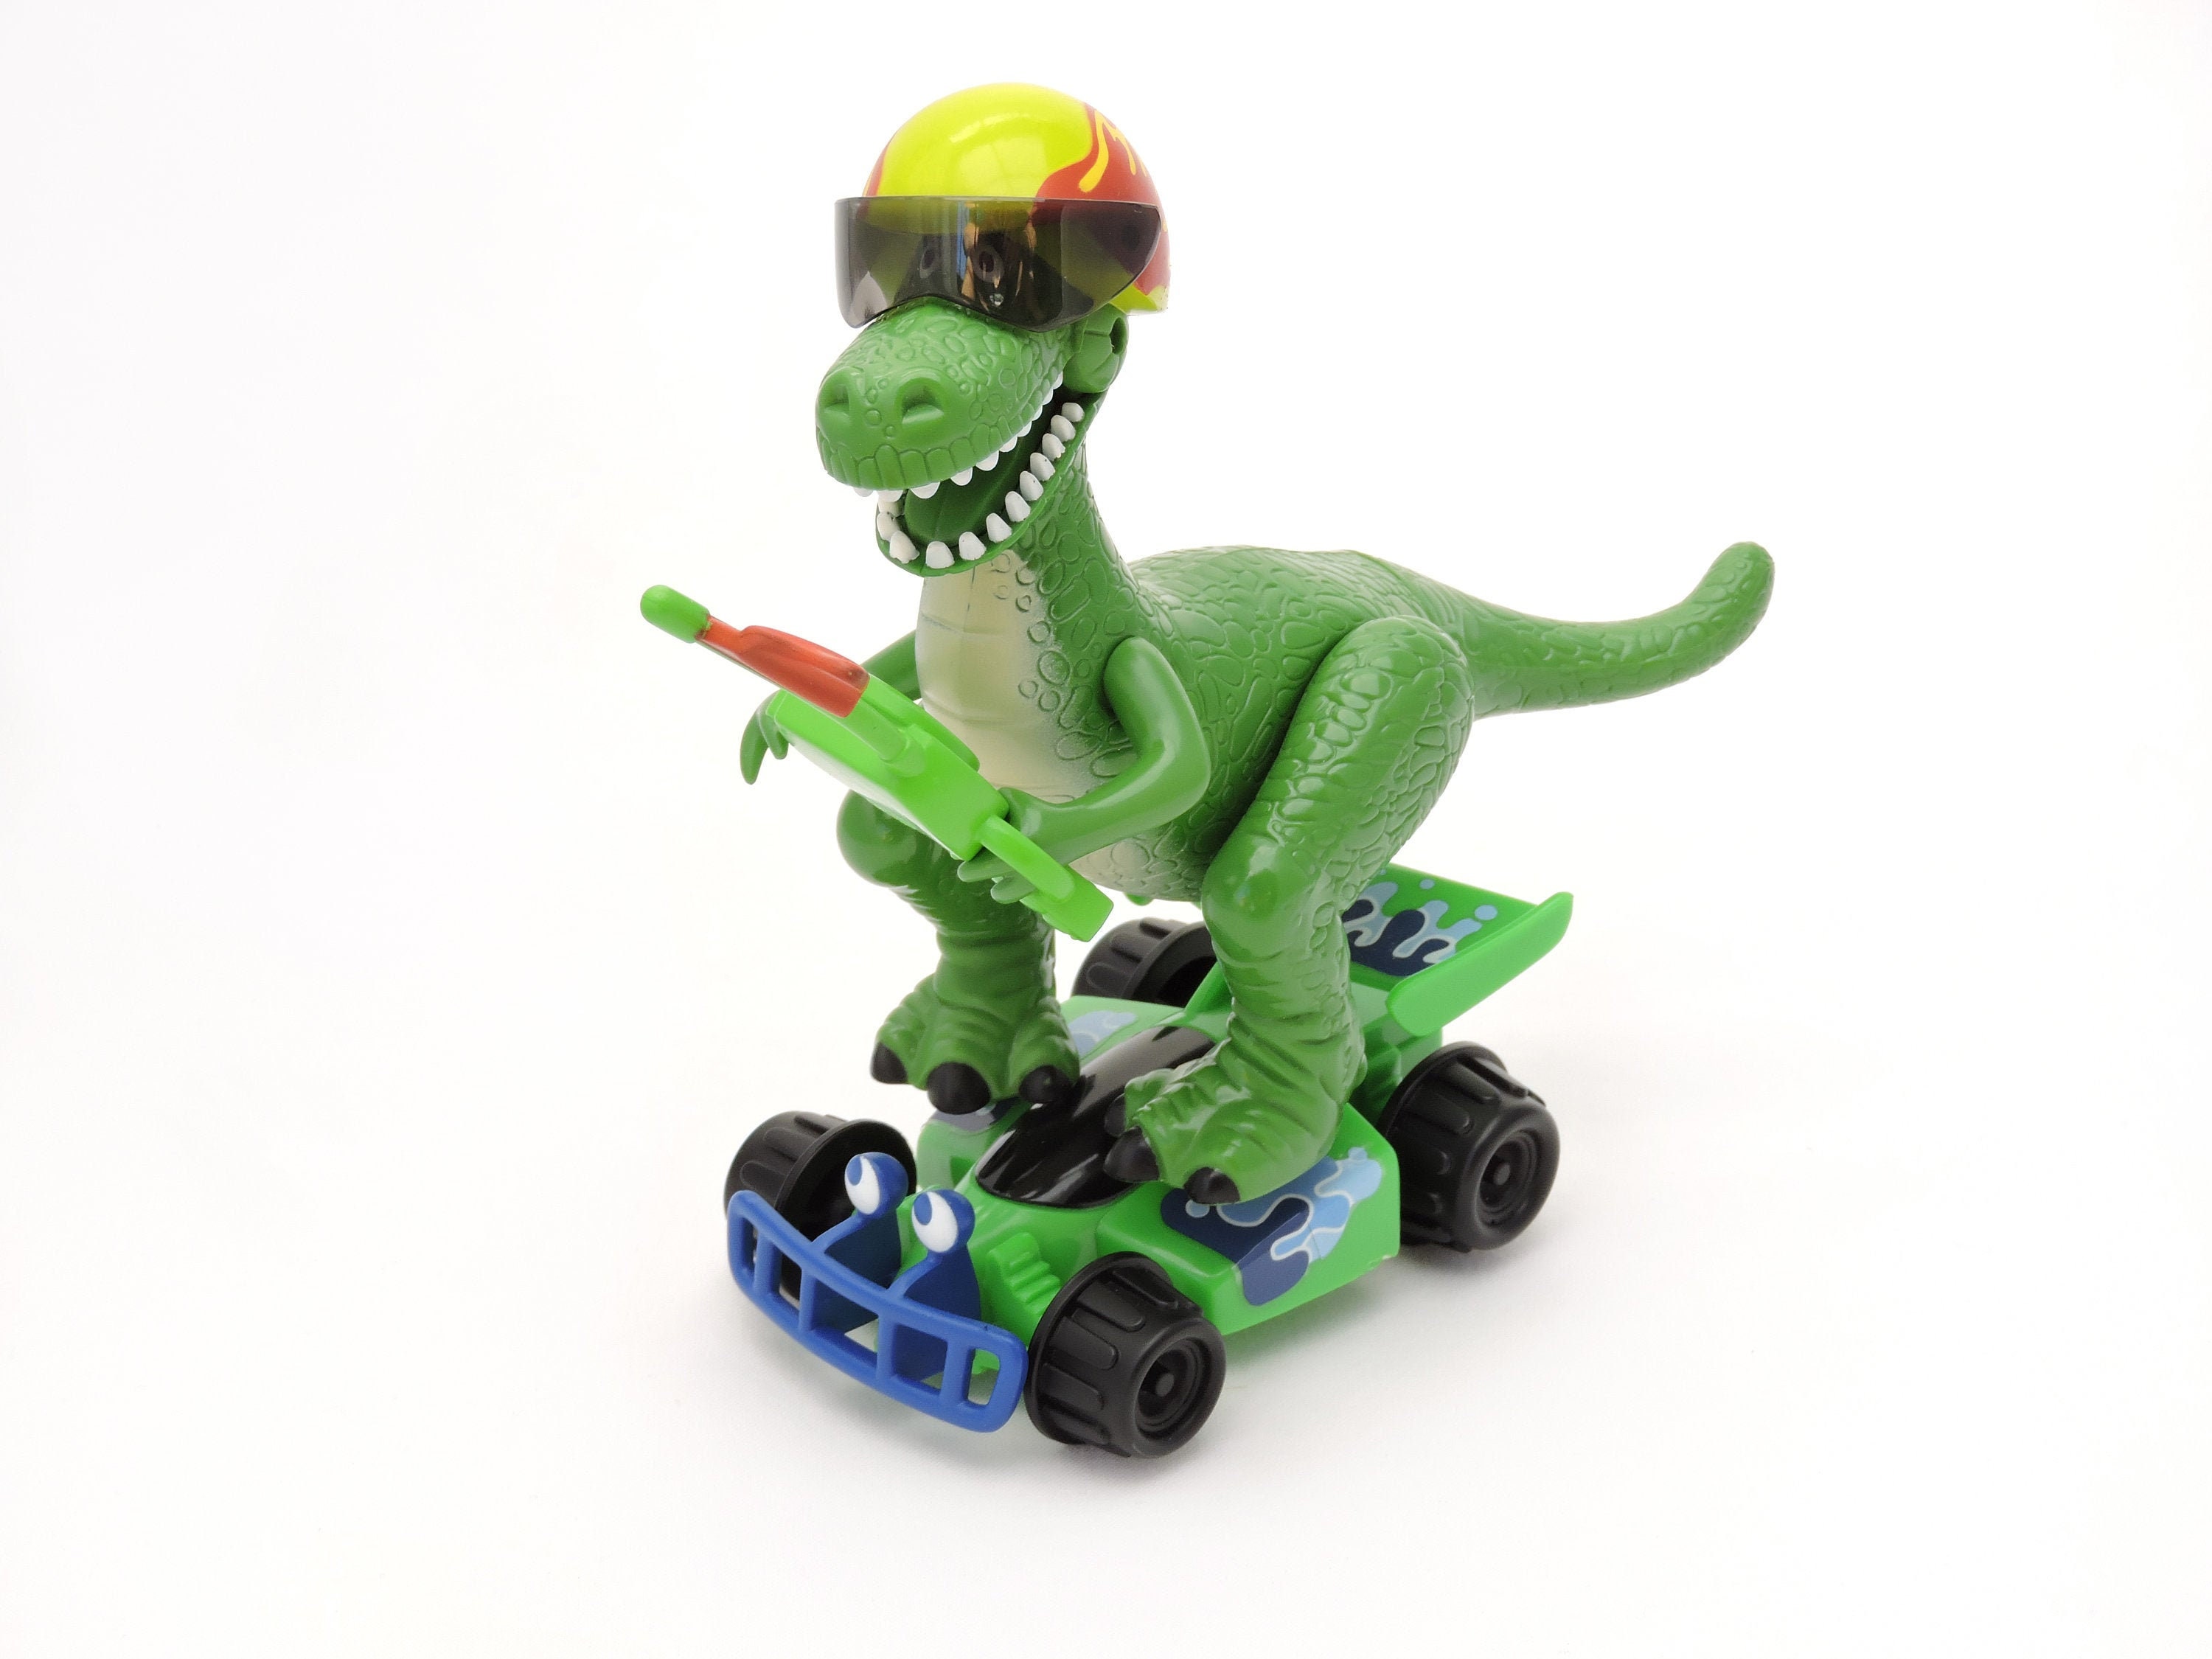 TONZE Dinosaure Jouet Circuit Voiture Enfant Electrique avec Figurine Dinosaure 